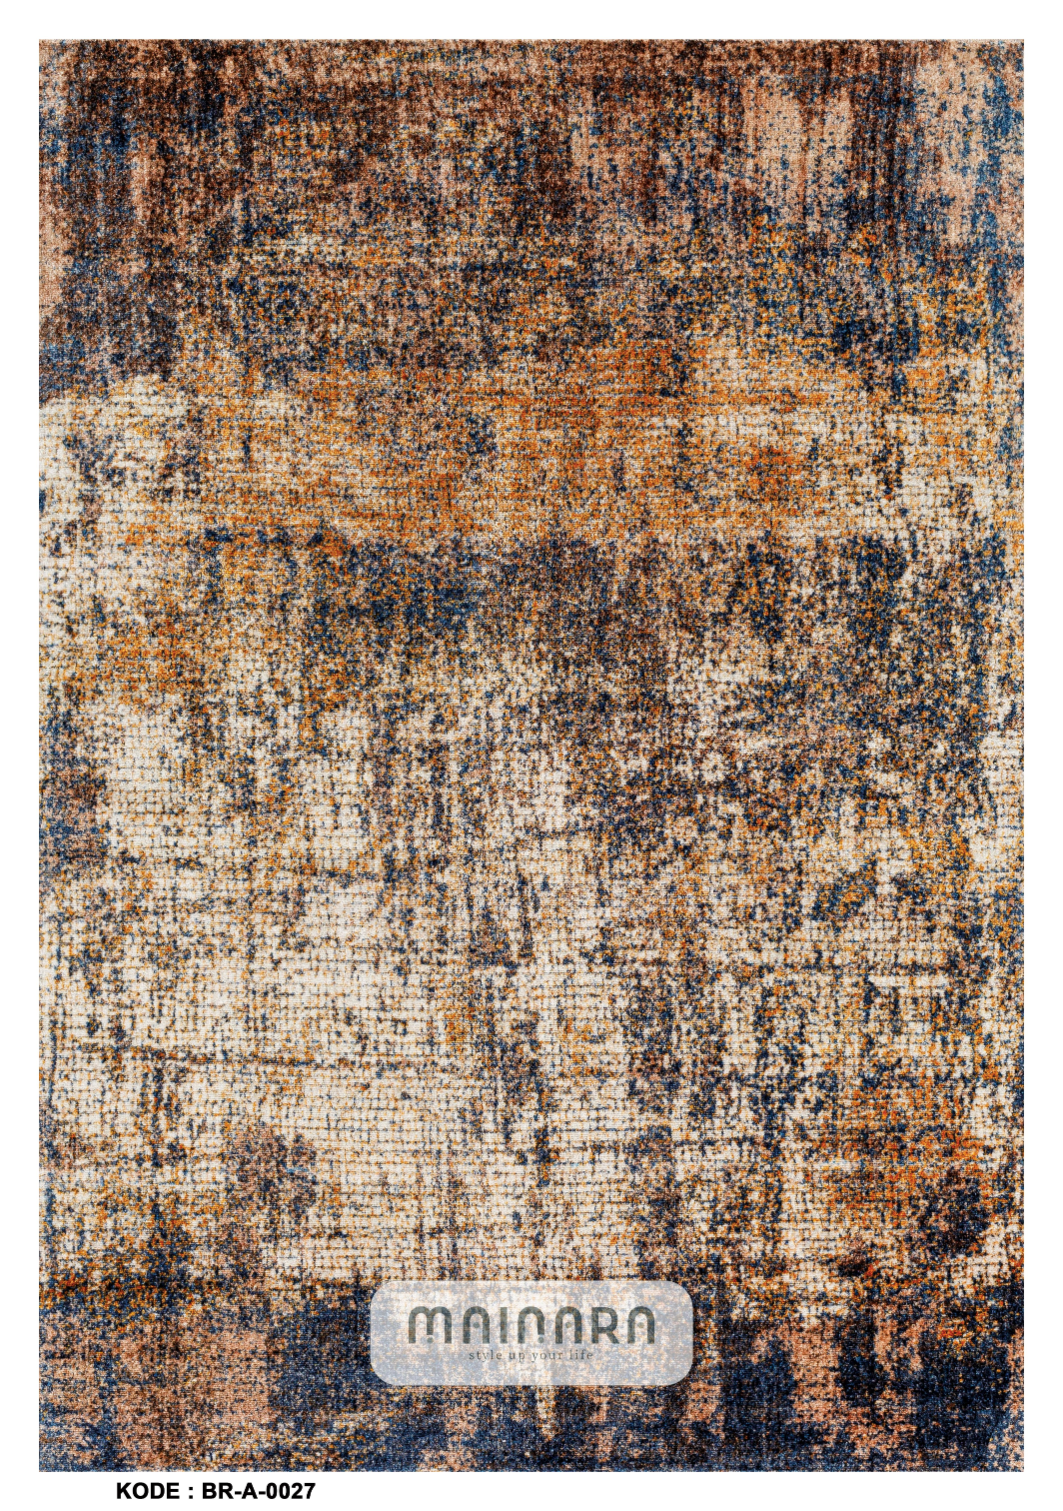 Karpet Abstrak (BR-A-0027) - Brown,Blue,Black,Orange